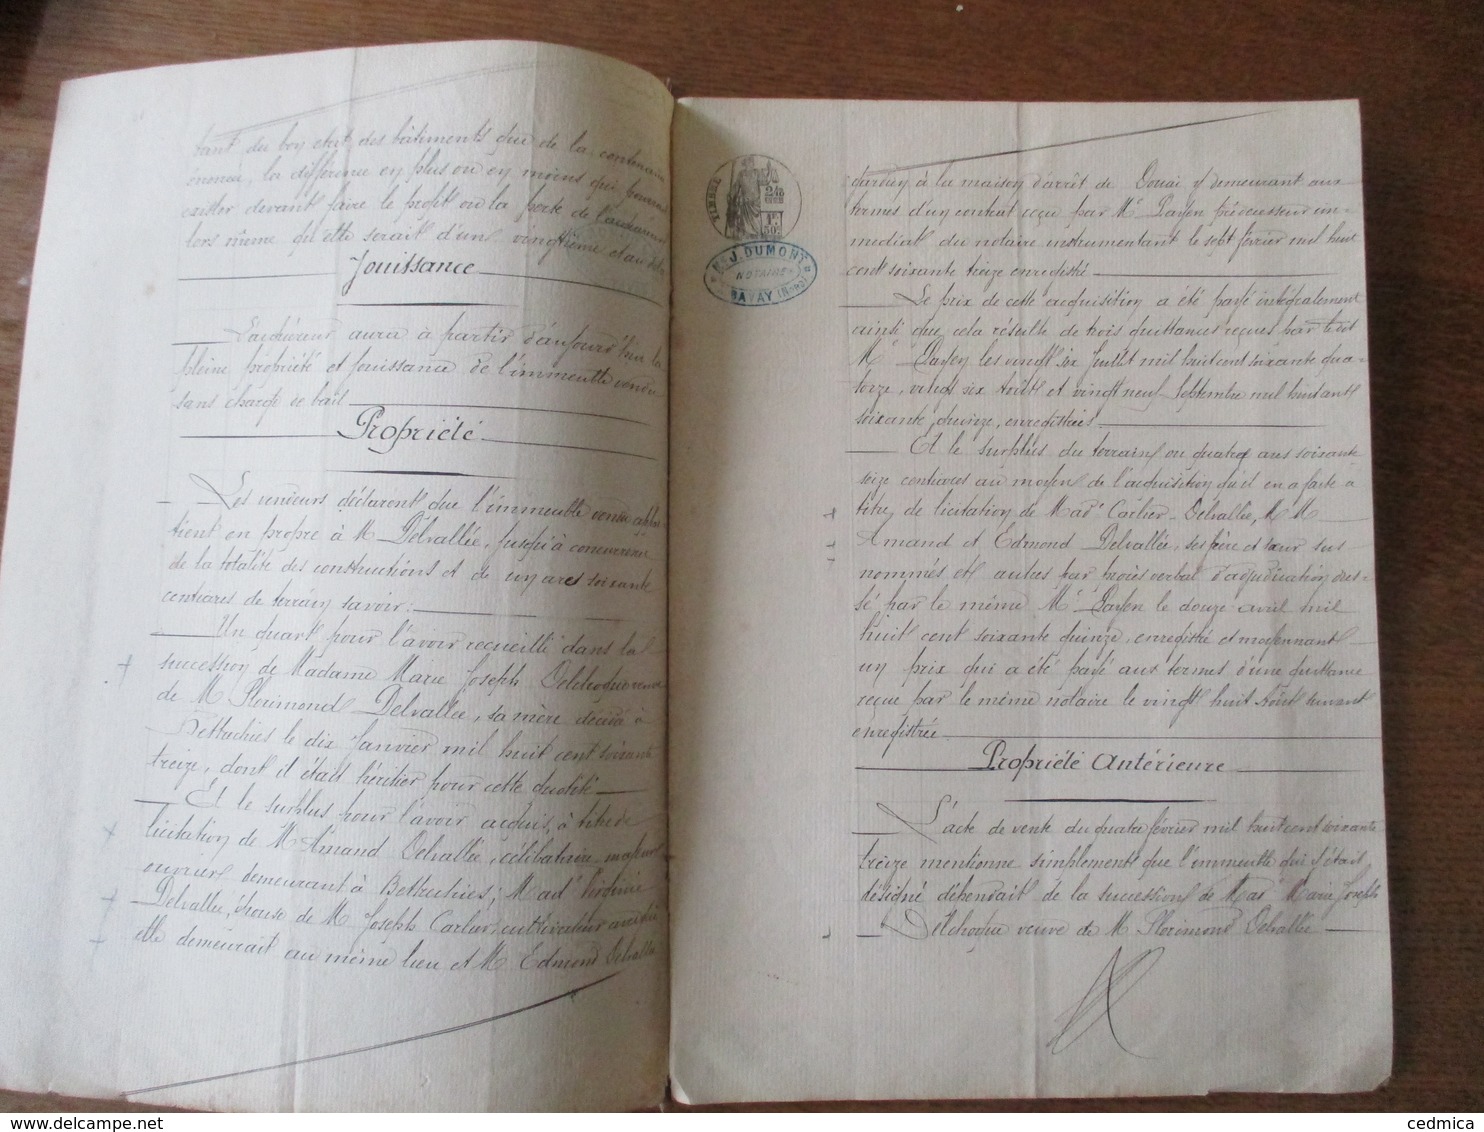 BETTRECHIES LE 9 FEVRIER 1885 VENTE PAR M. PIERRE DELVALLEE A M.PHILEMON CARLOT MARCHAND BRASSEUR A HOUDAIN UNE MAISON - Manuscrits